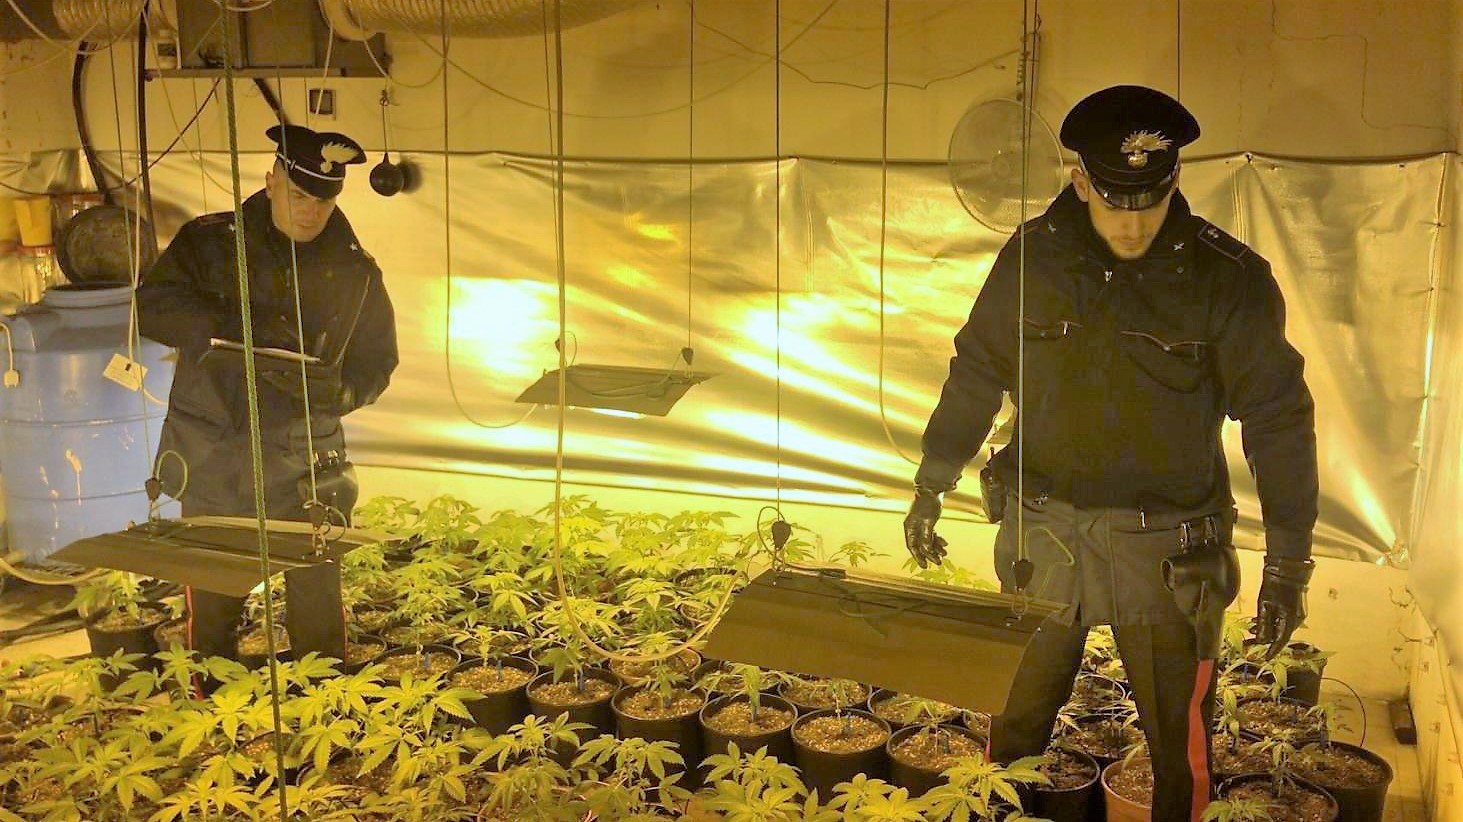 In casa serra con tecnologia luminosa a raggi uva per la coltivazione di marijuana: arrestato